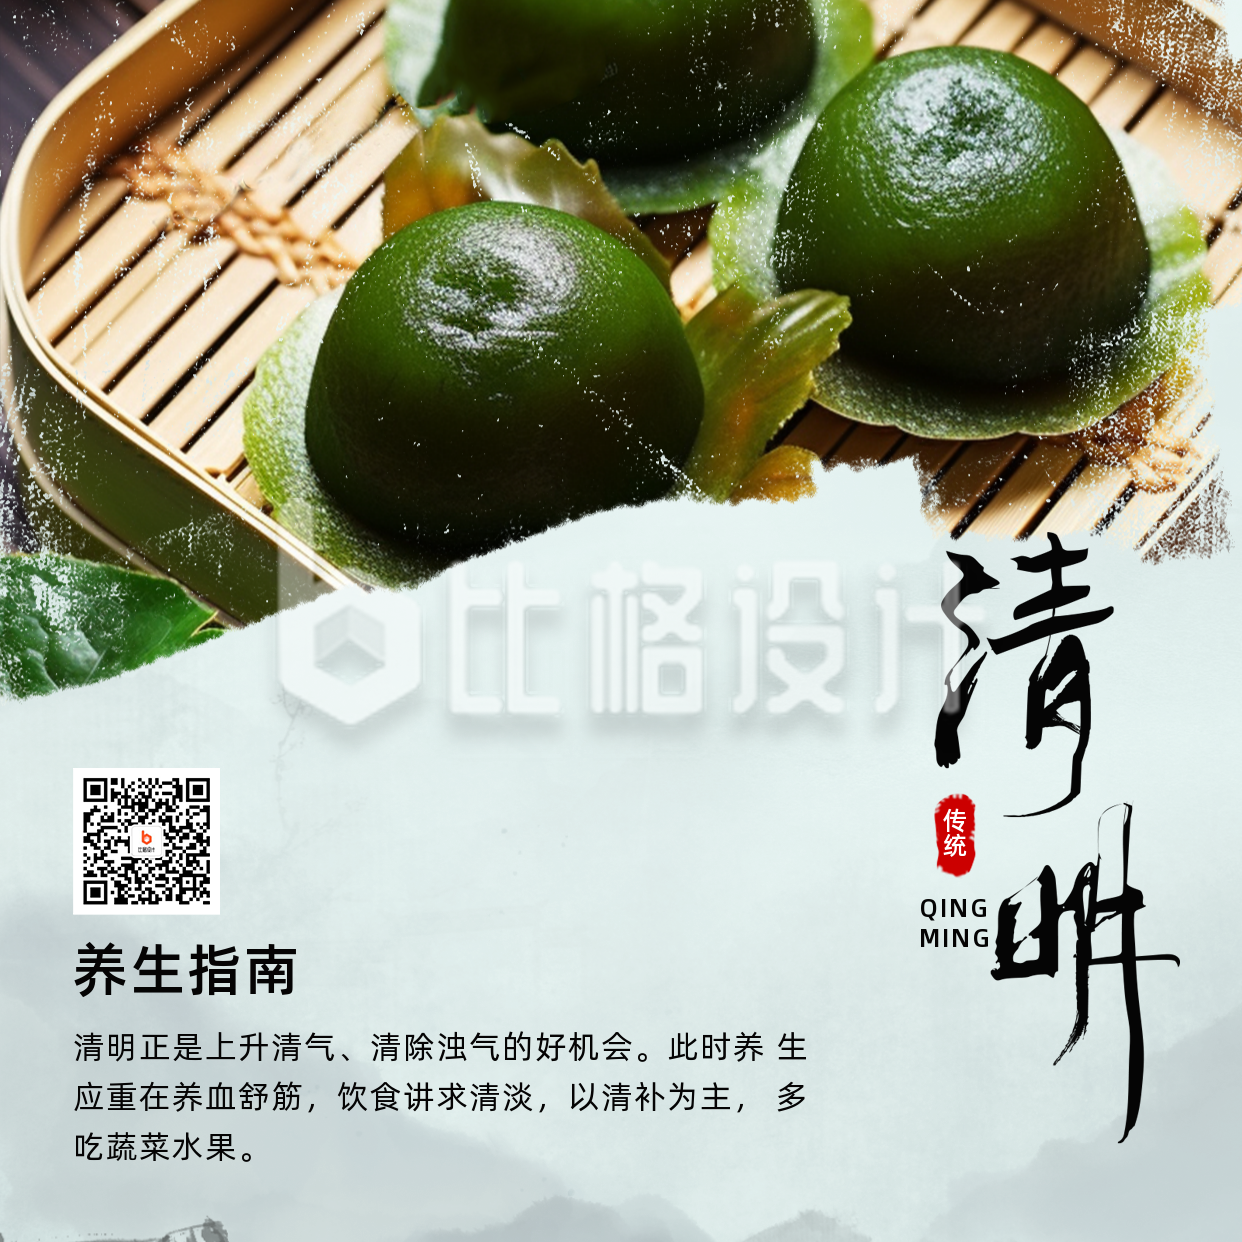 清明节传统习俗吃青团养生实景方形海报